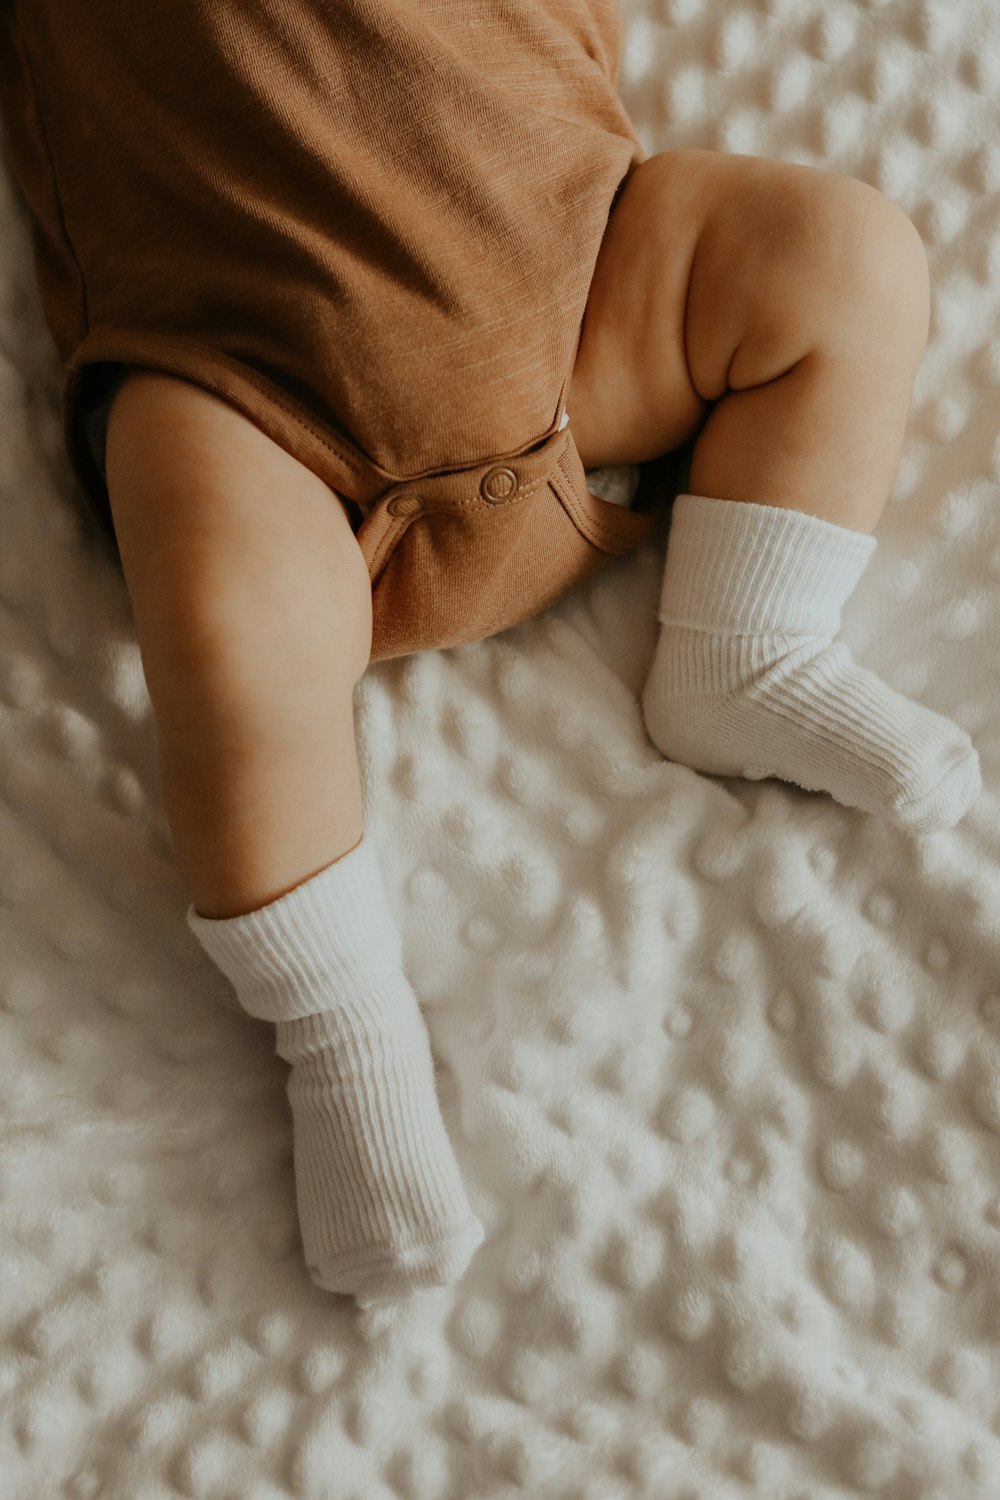 baby in white socks lying on white bed